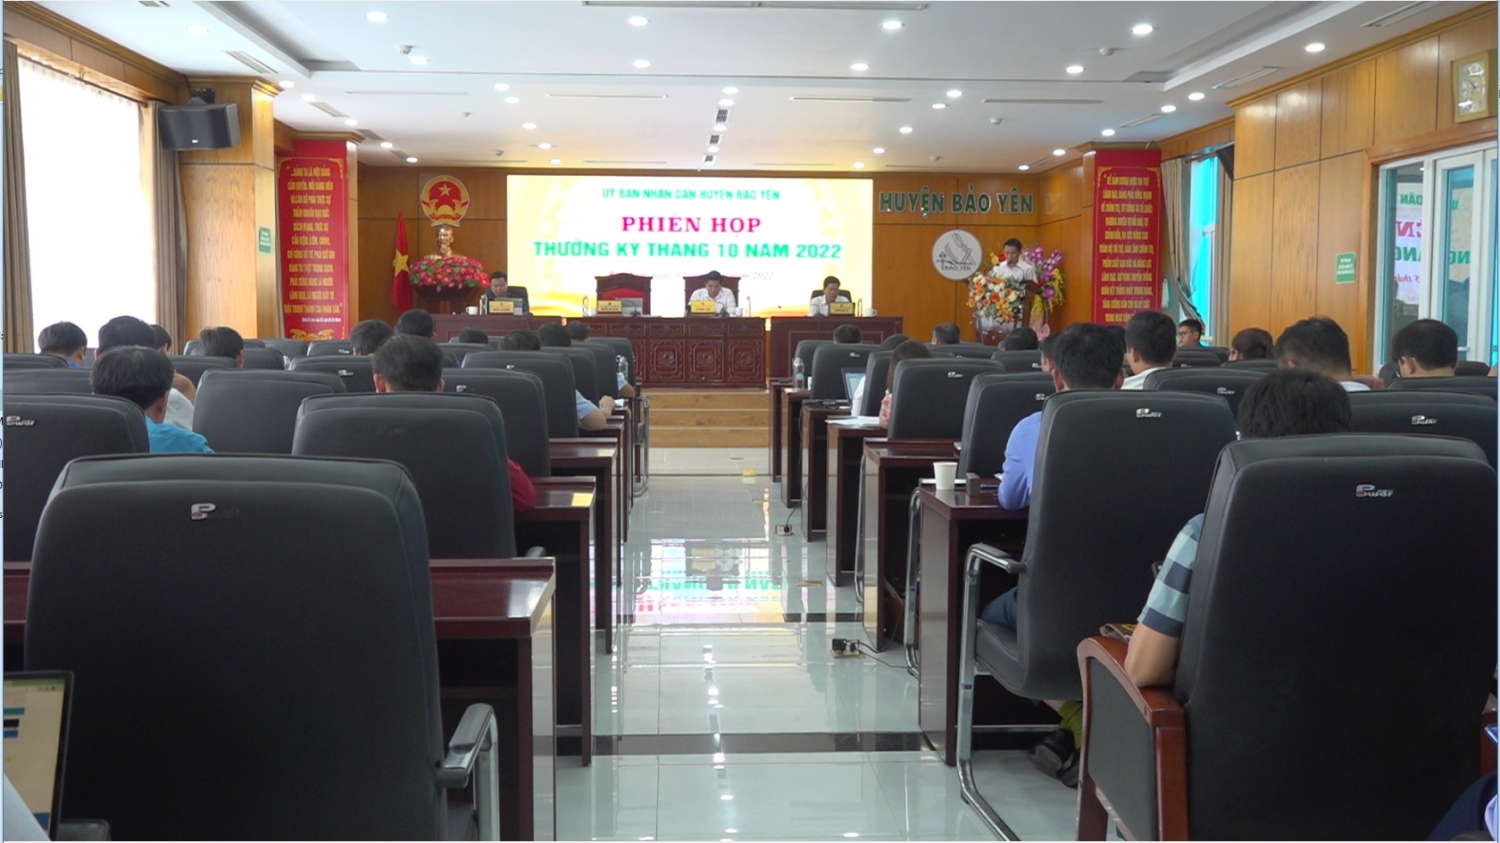 Quang cảnh phiên họp thường kỳ tháng 10 UBND huyện Bảo Yên